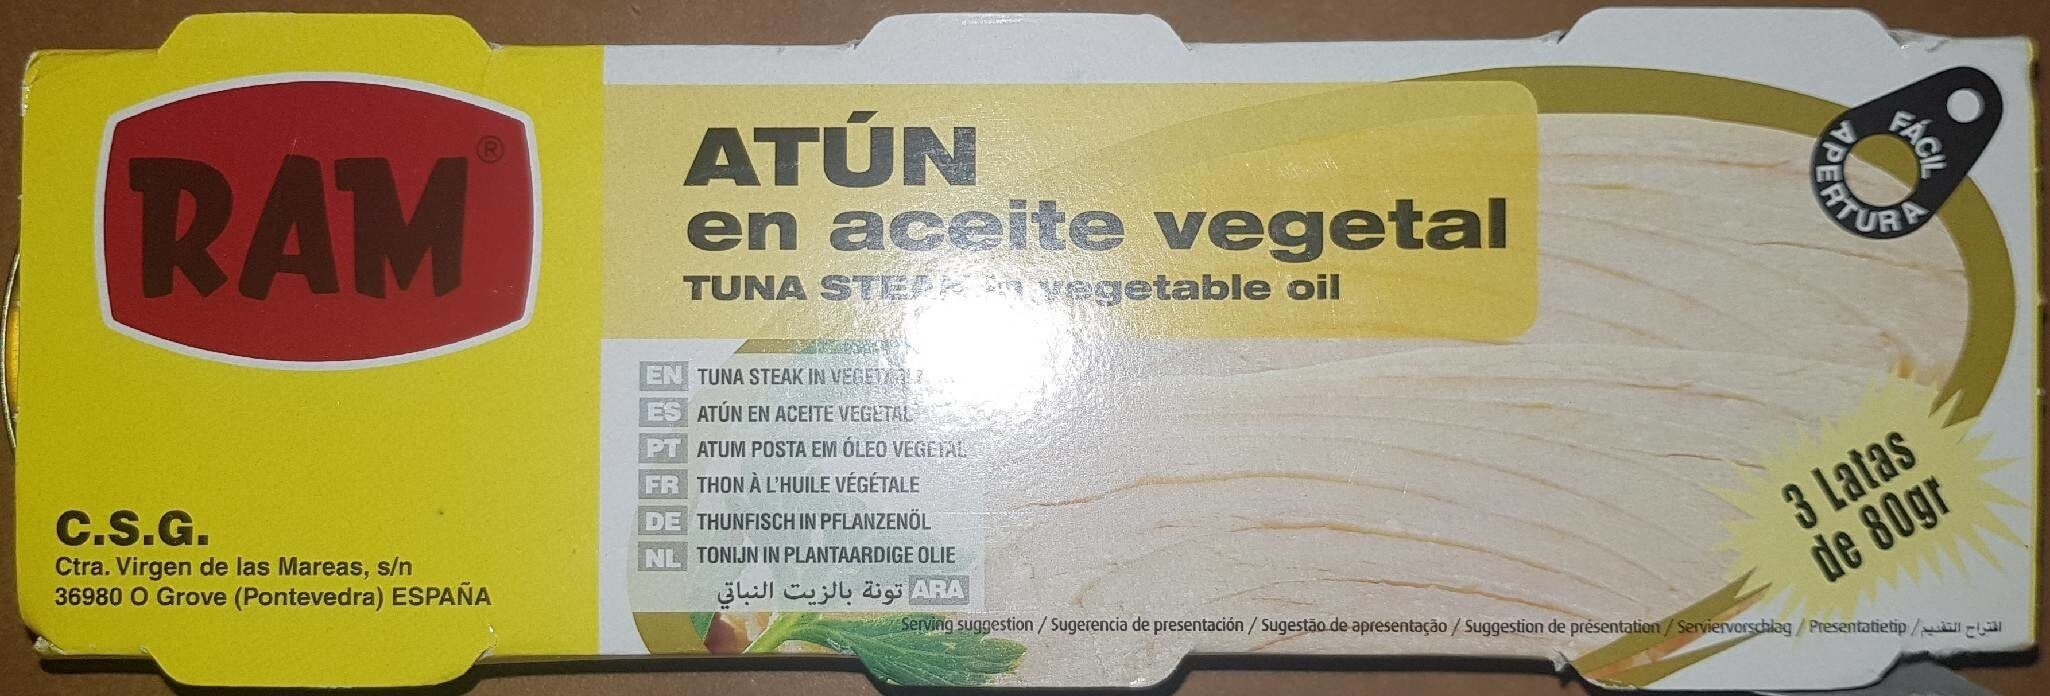 Atún en aceite vegetal - Producto